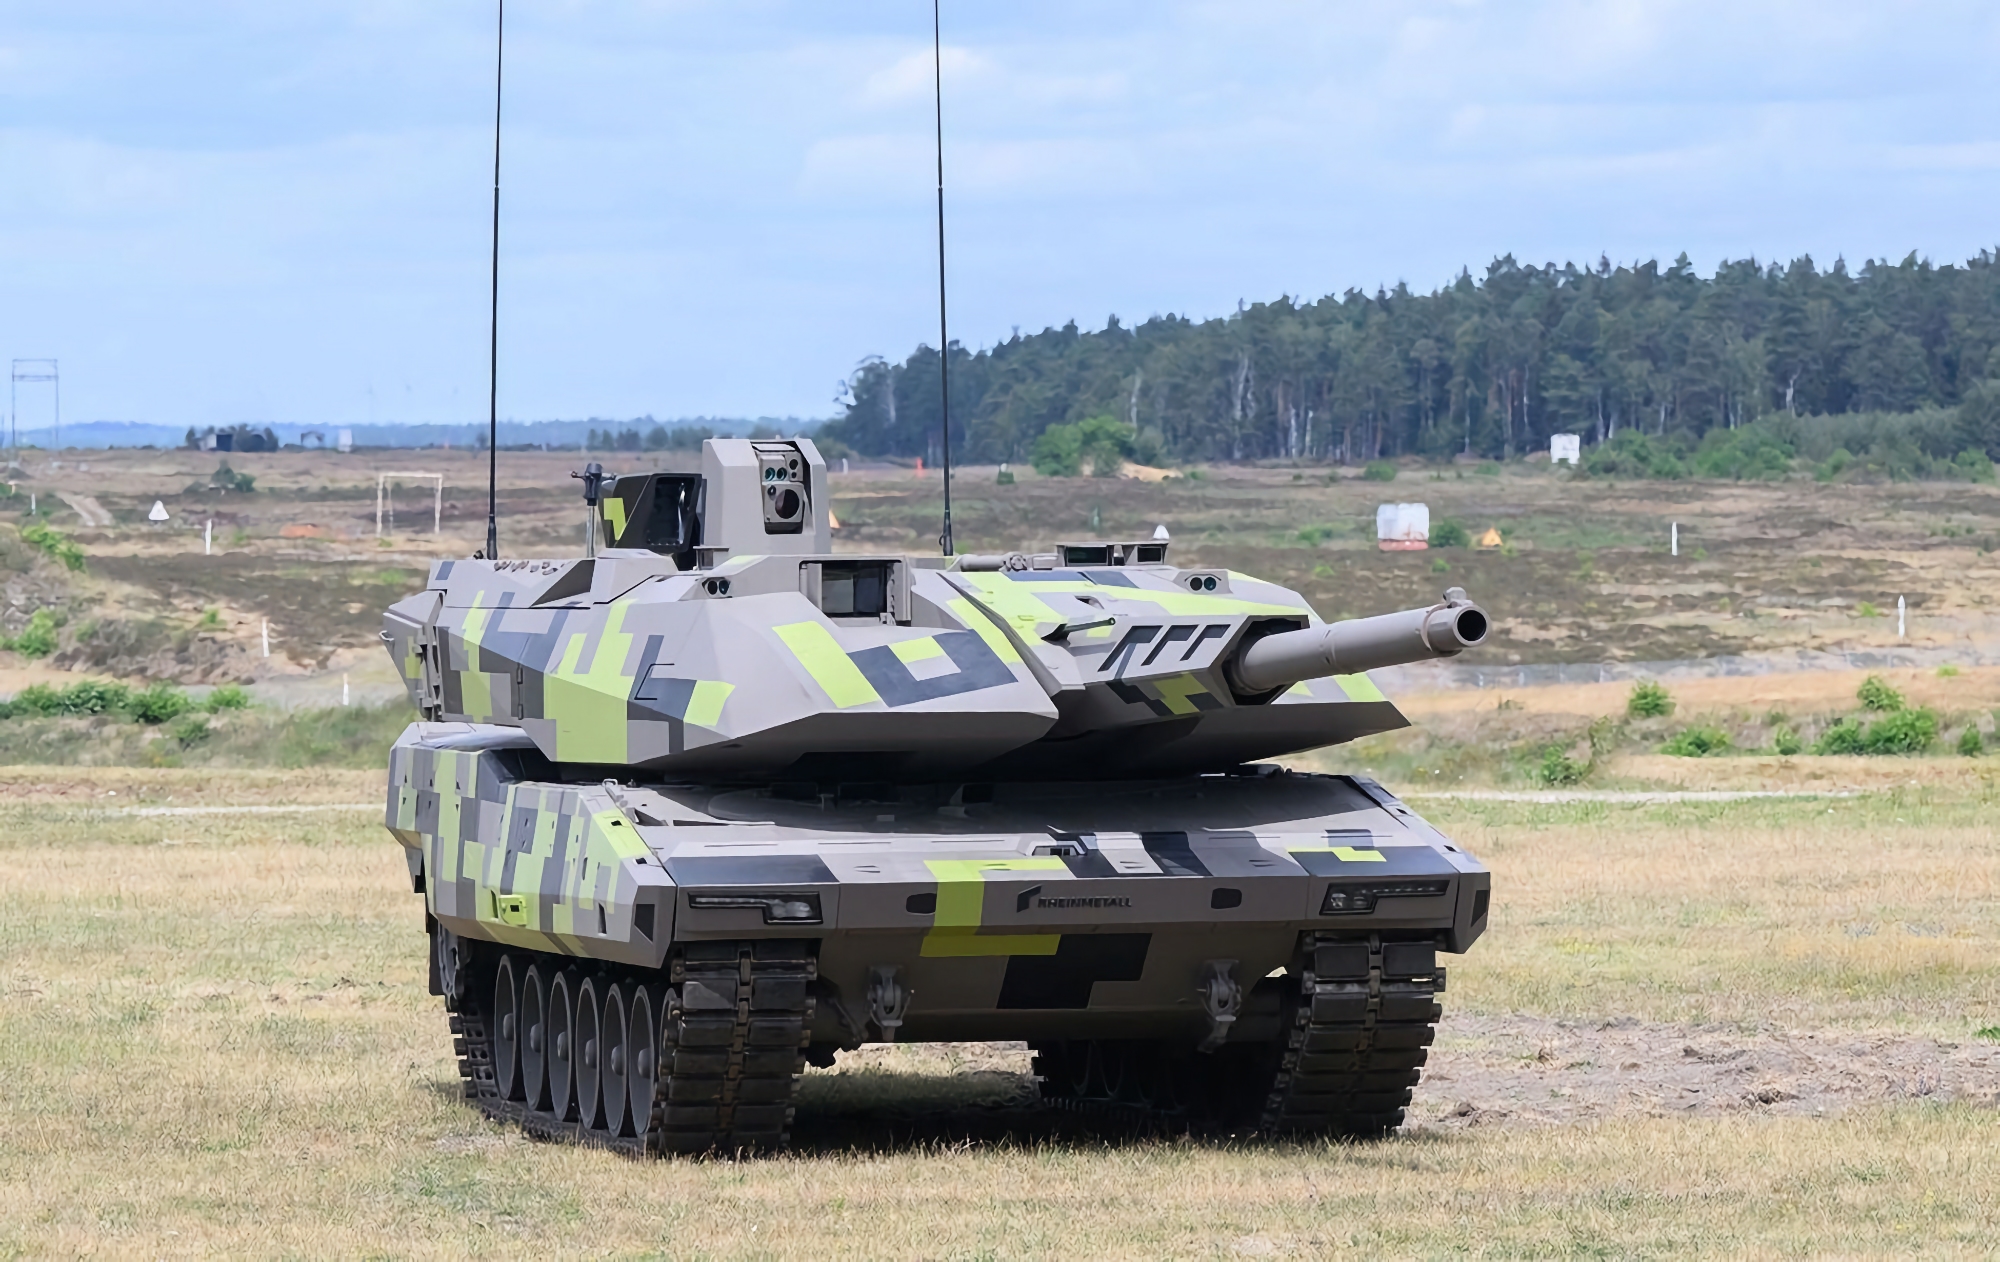 Rheinmetall prévoit de produire des munitions, des chars Panther KF51 et des systèmes de défense aérienne en Ukraine